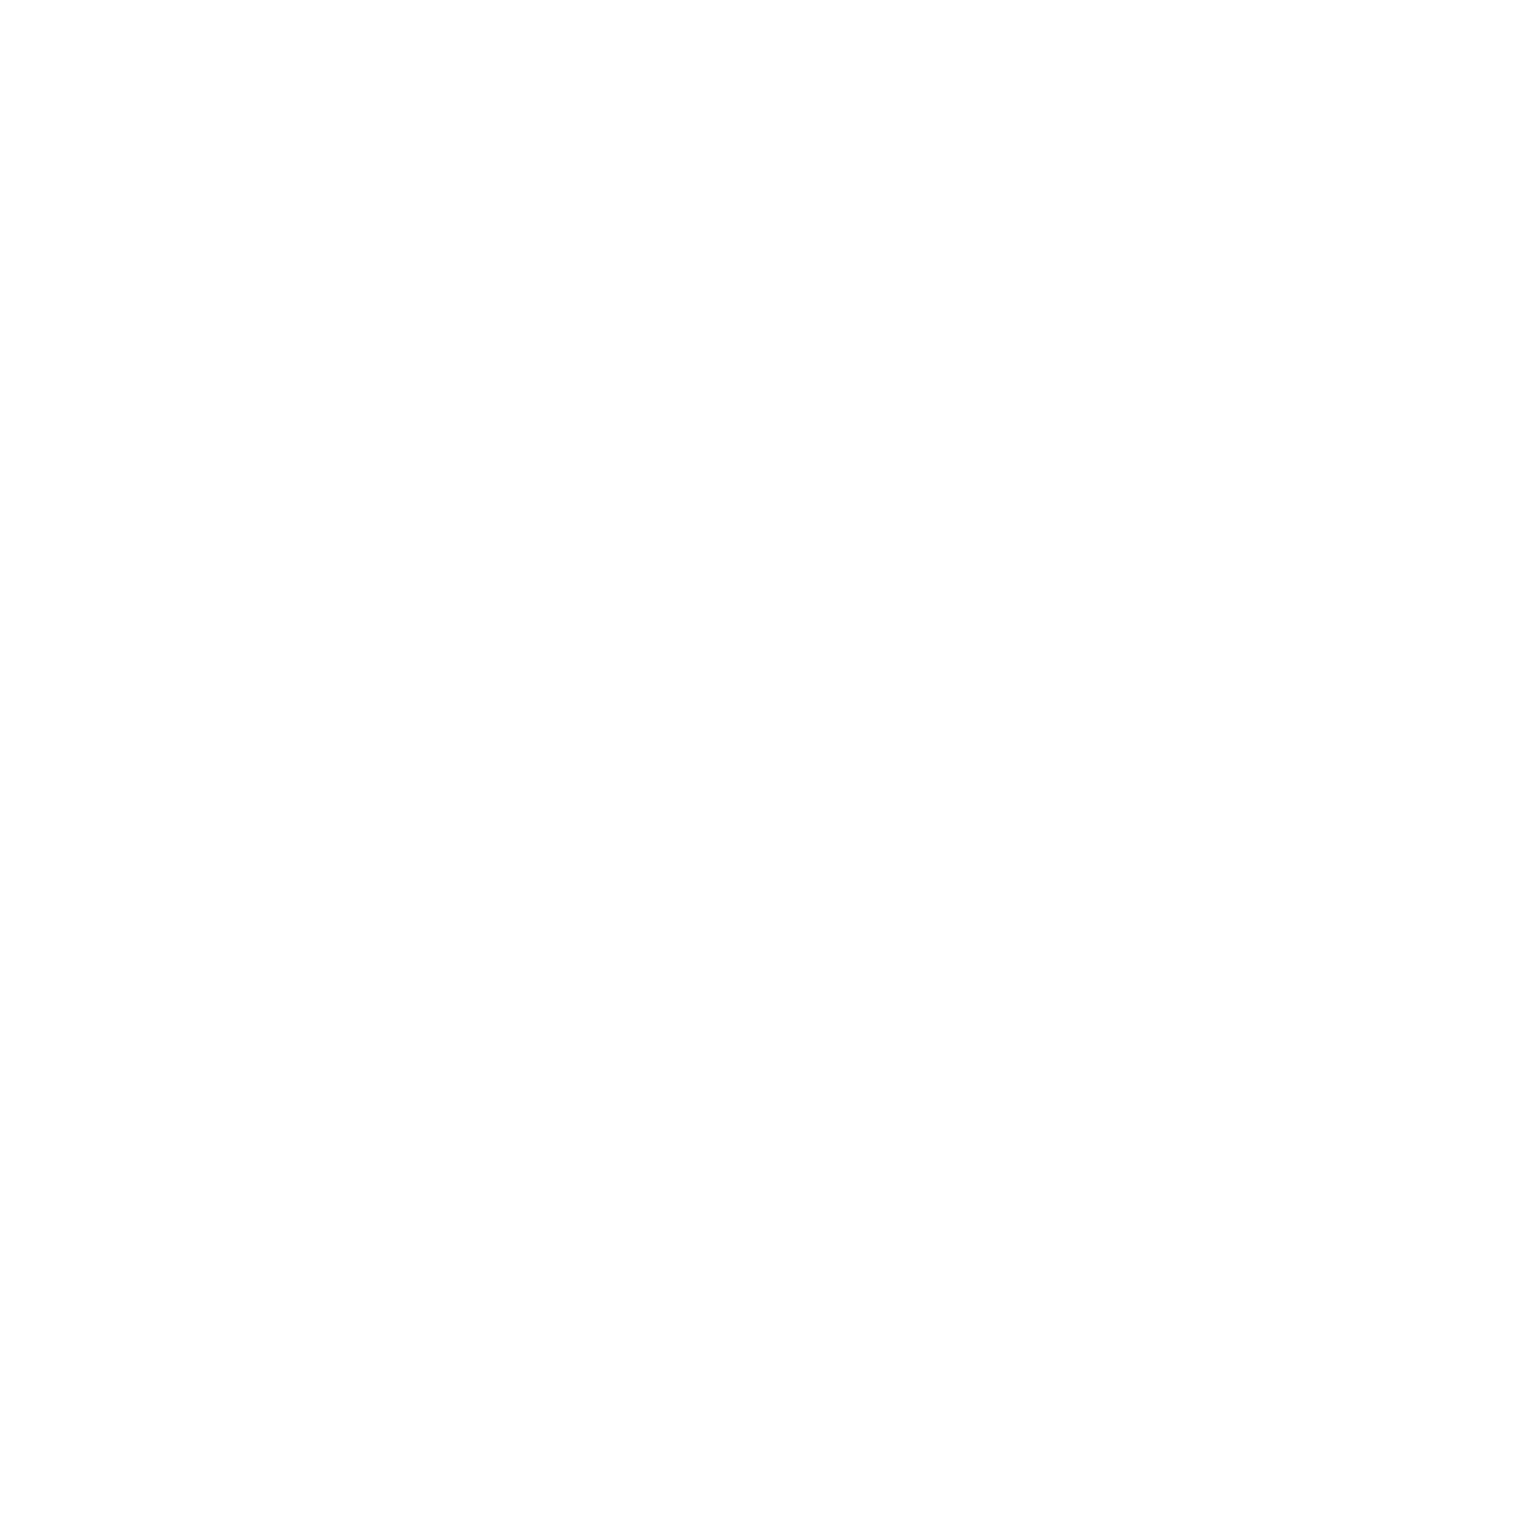 Terran Orbital logo pour fonds sombres (PNG transparent)